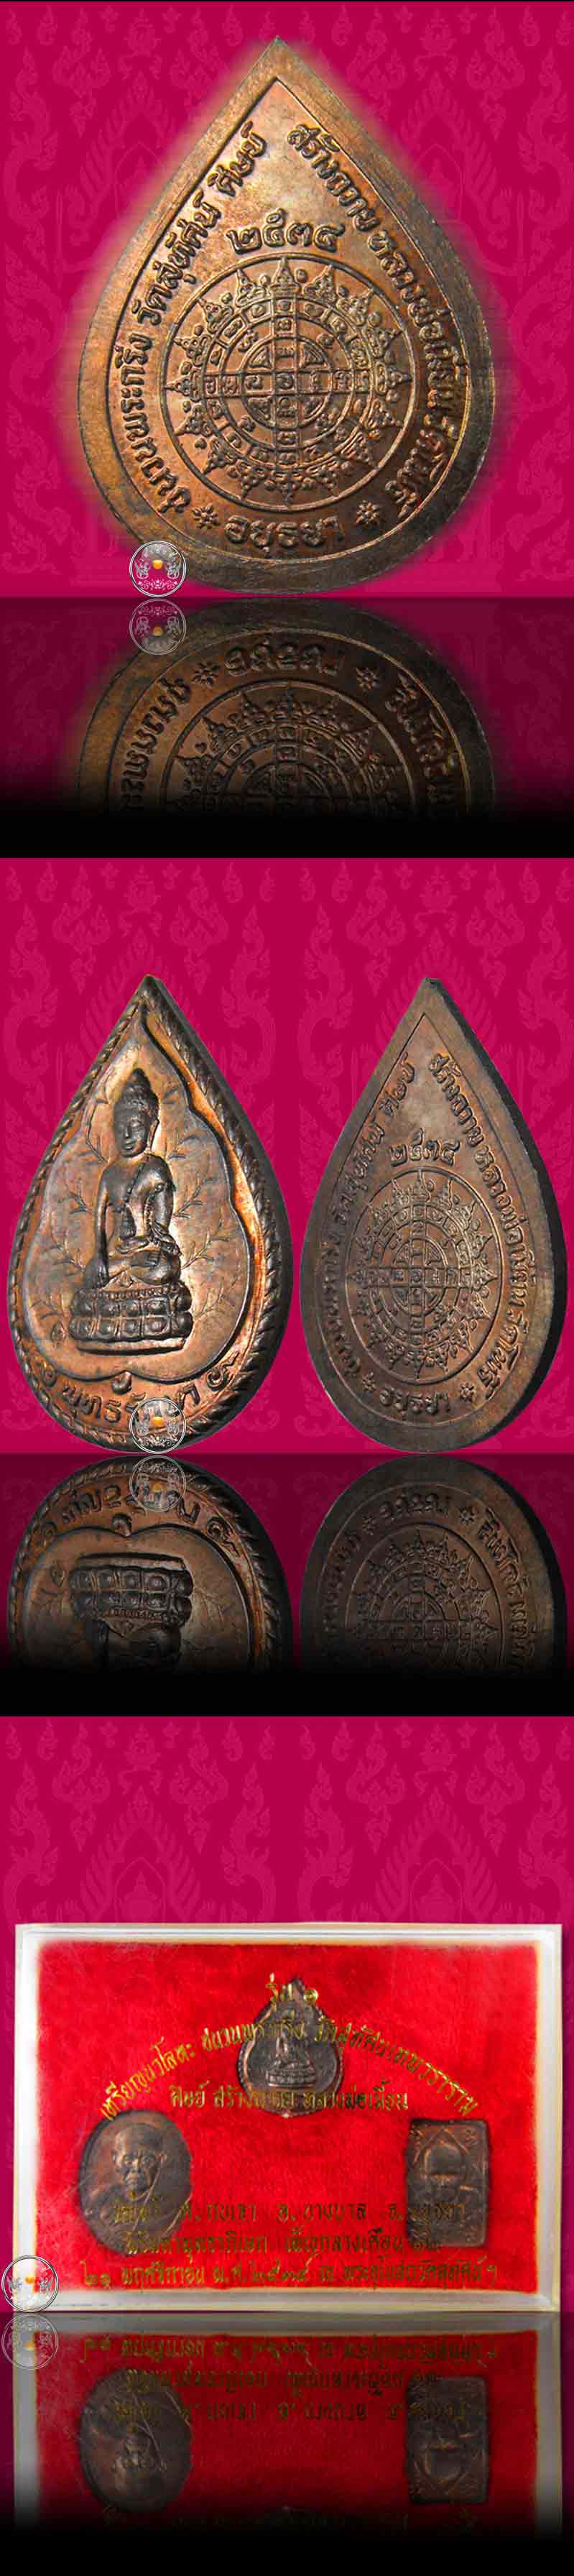 เหรียญนวะโลหะรุ่นแรก (ชนวนพระกริ่งสังฆราชแพฯ) หลวงพ่อเมี้ยน วัดโพธิ์กบเจา จ.อยุธยา ปี 2534 (ครบชุด) - 4